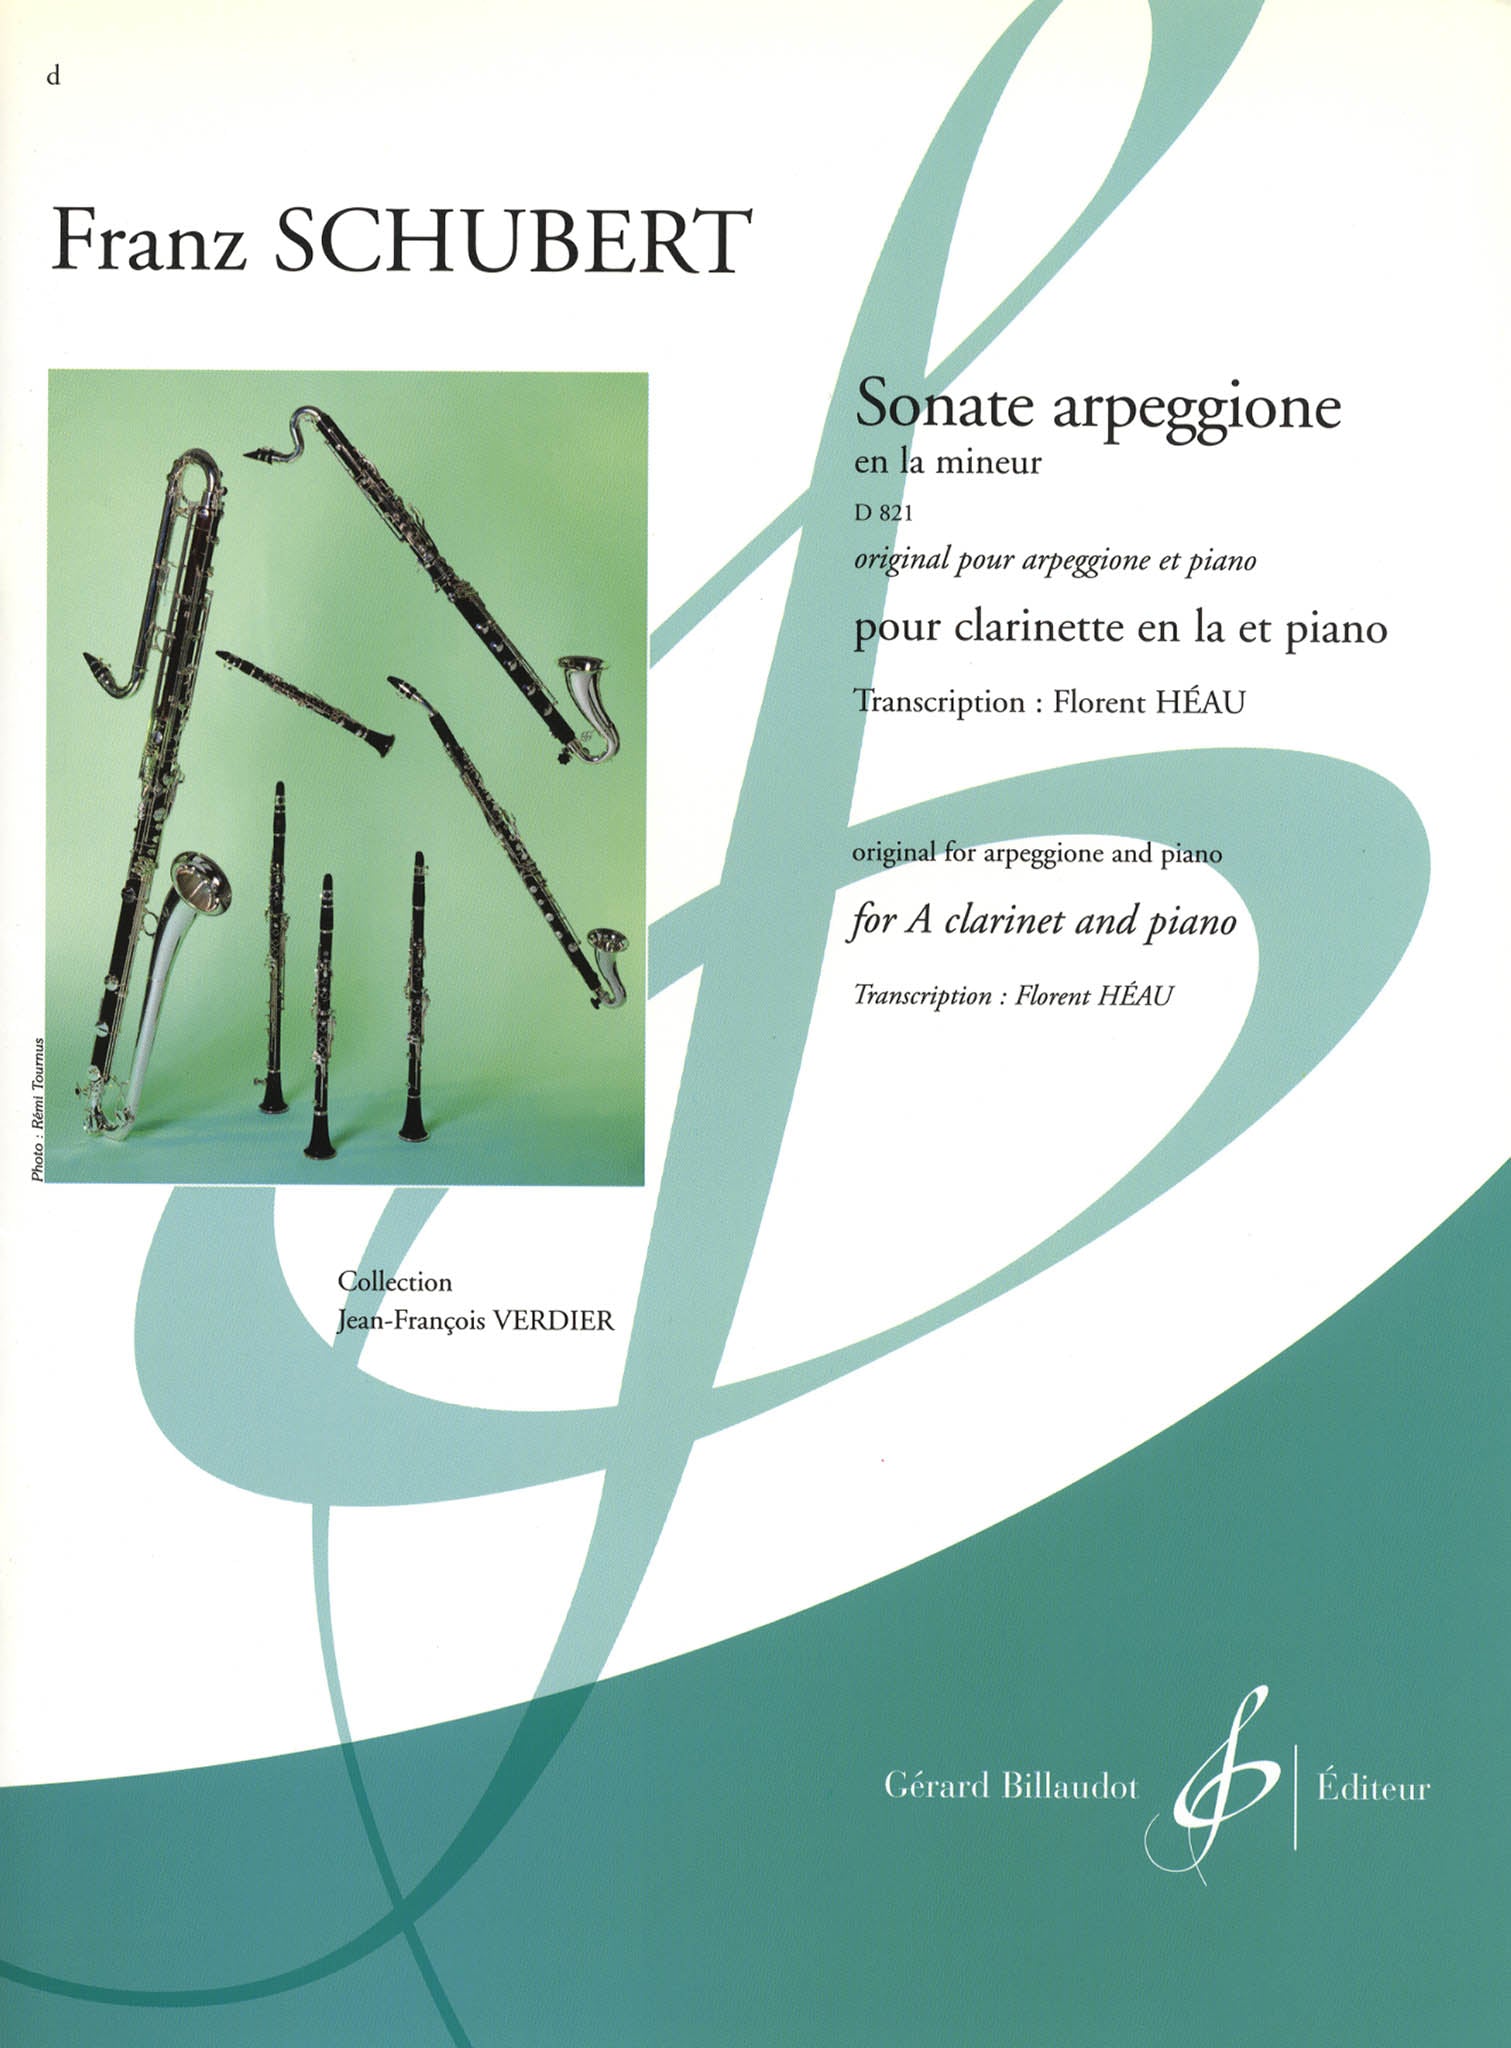 Schubert Arpeggione Sonata clarinet transcription Billaudot cover